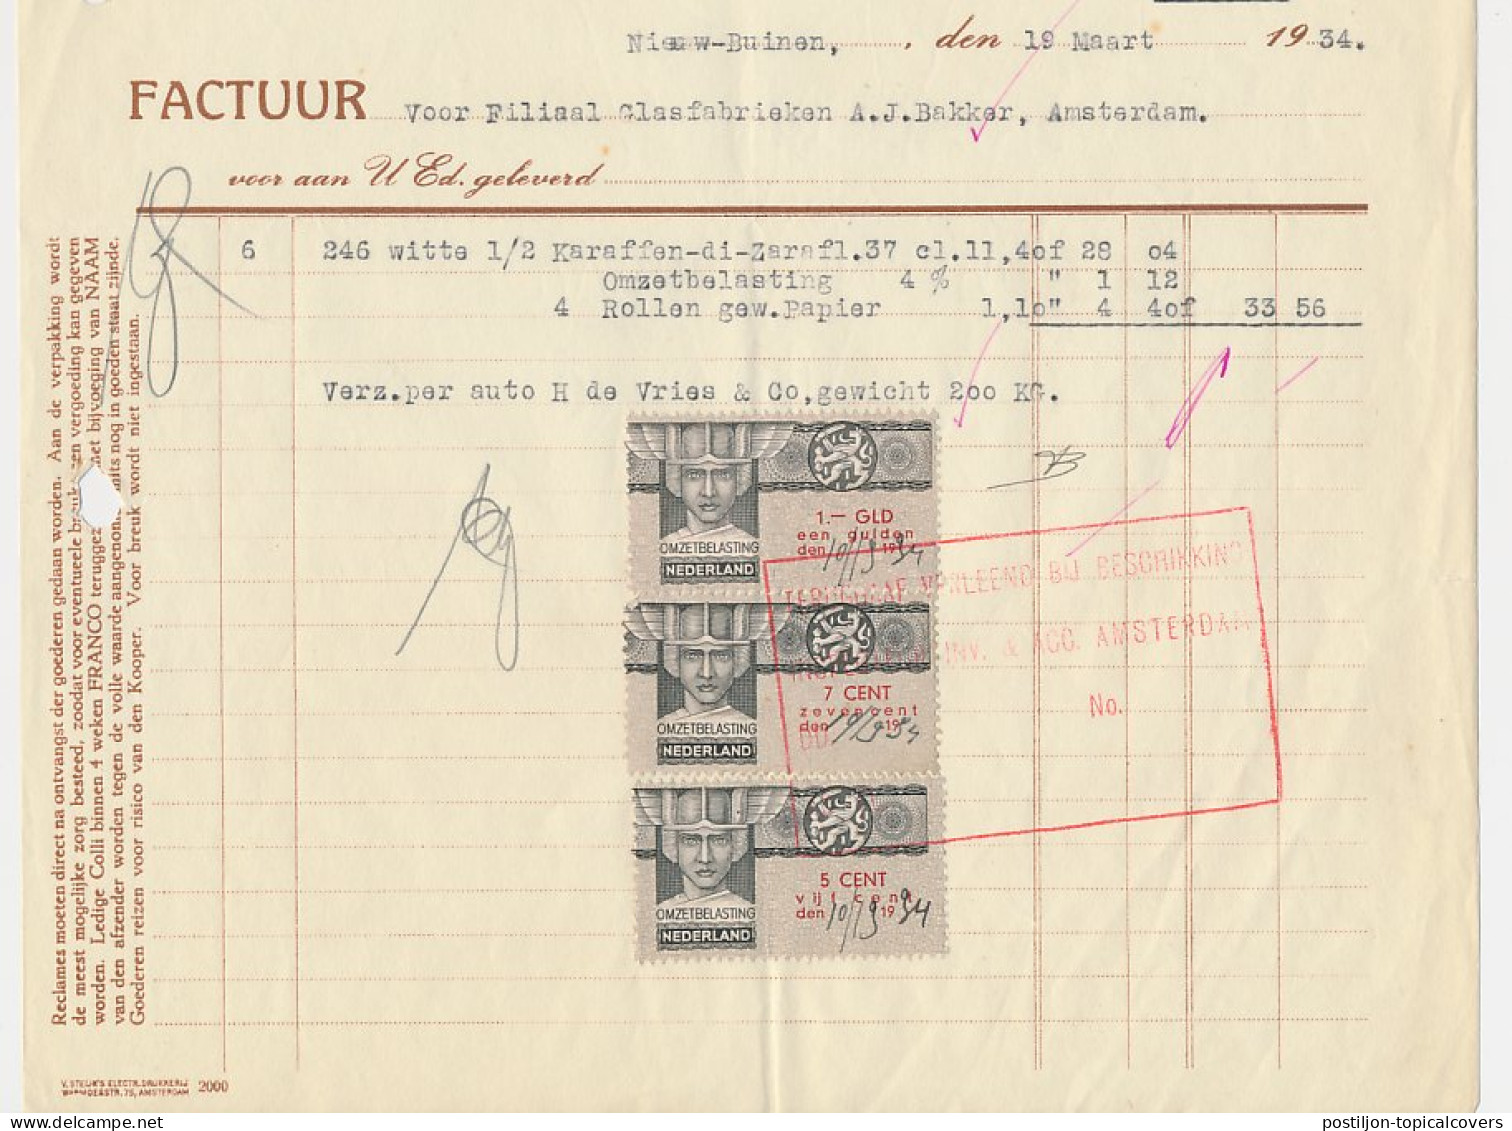 Omzetbelasting 9 CENT / 1.- GLD - Nieuw Buinen 1934 - Fiscales